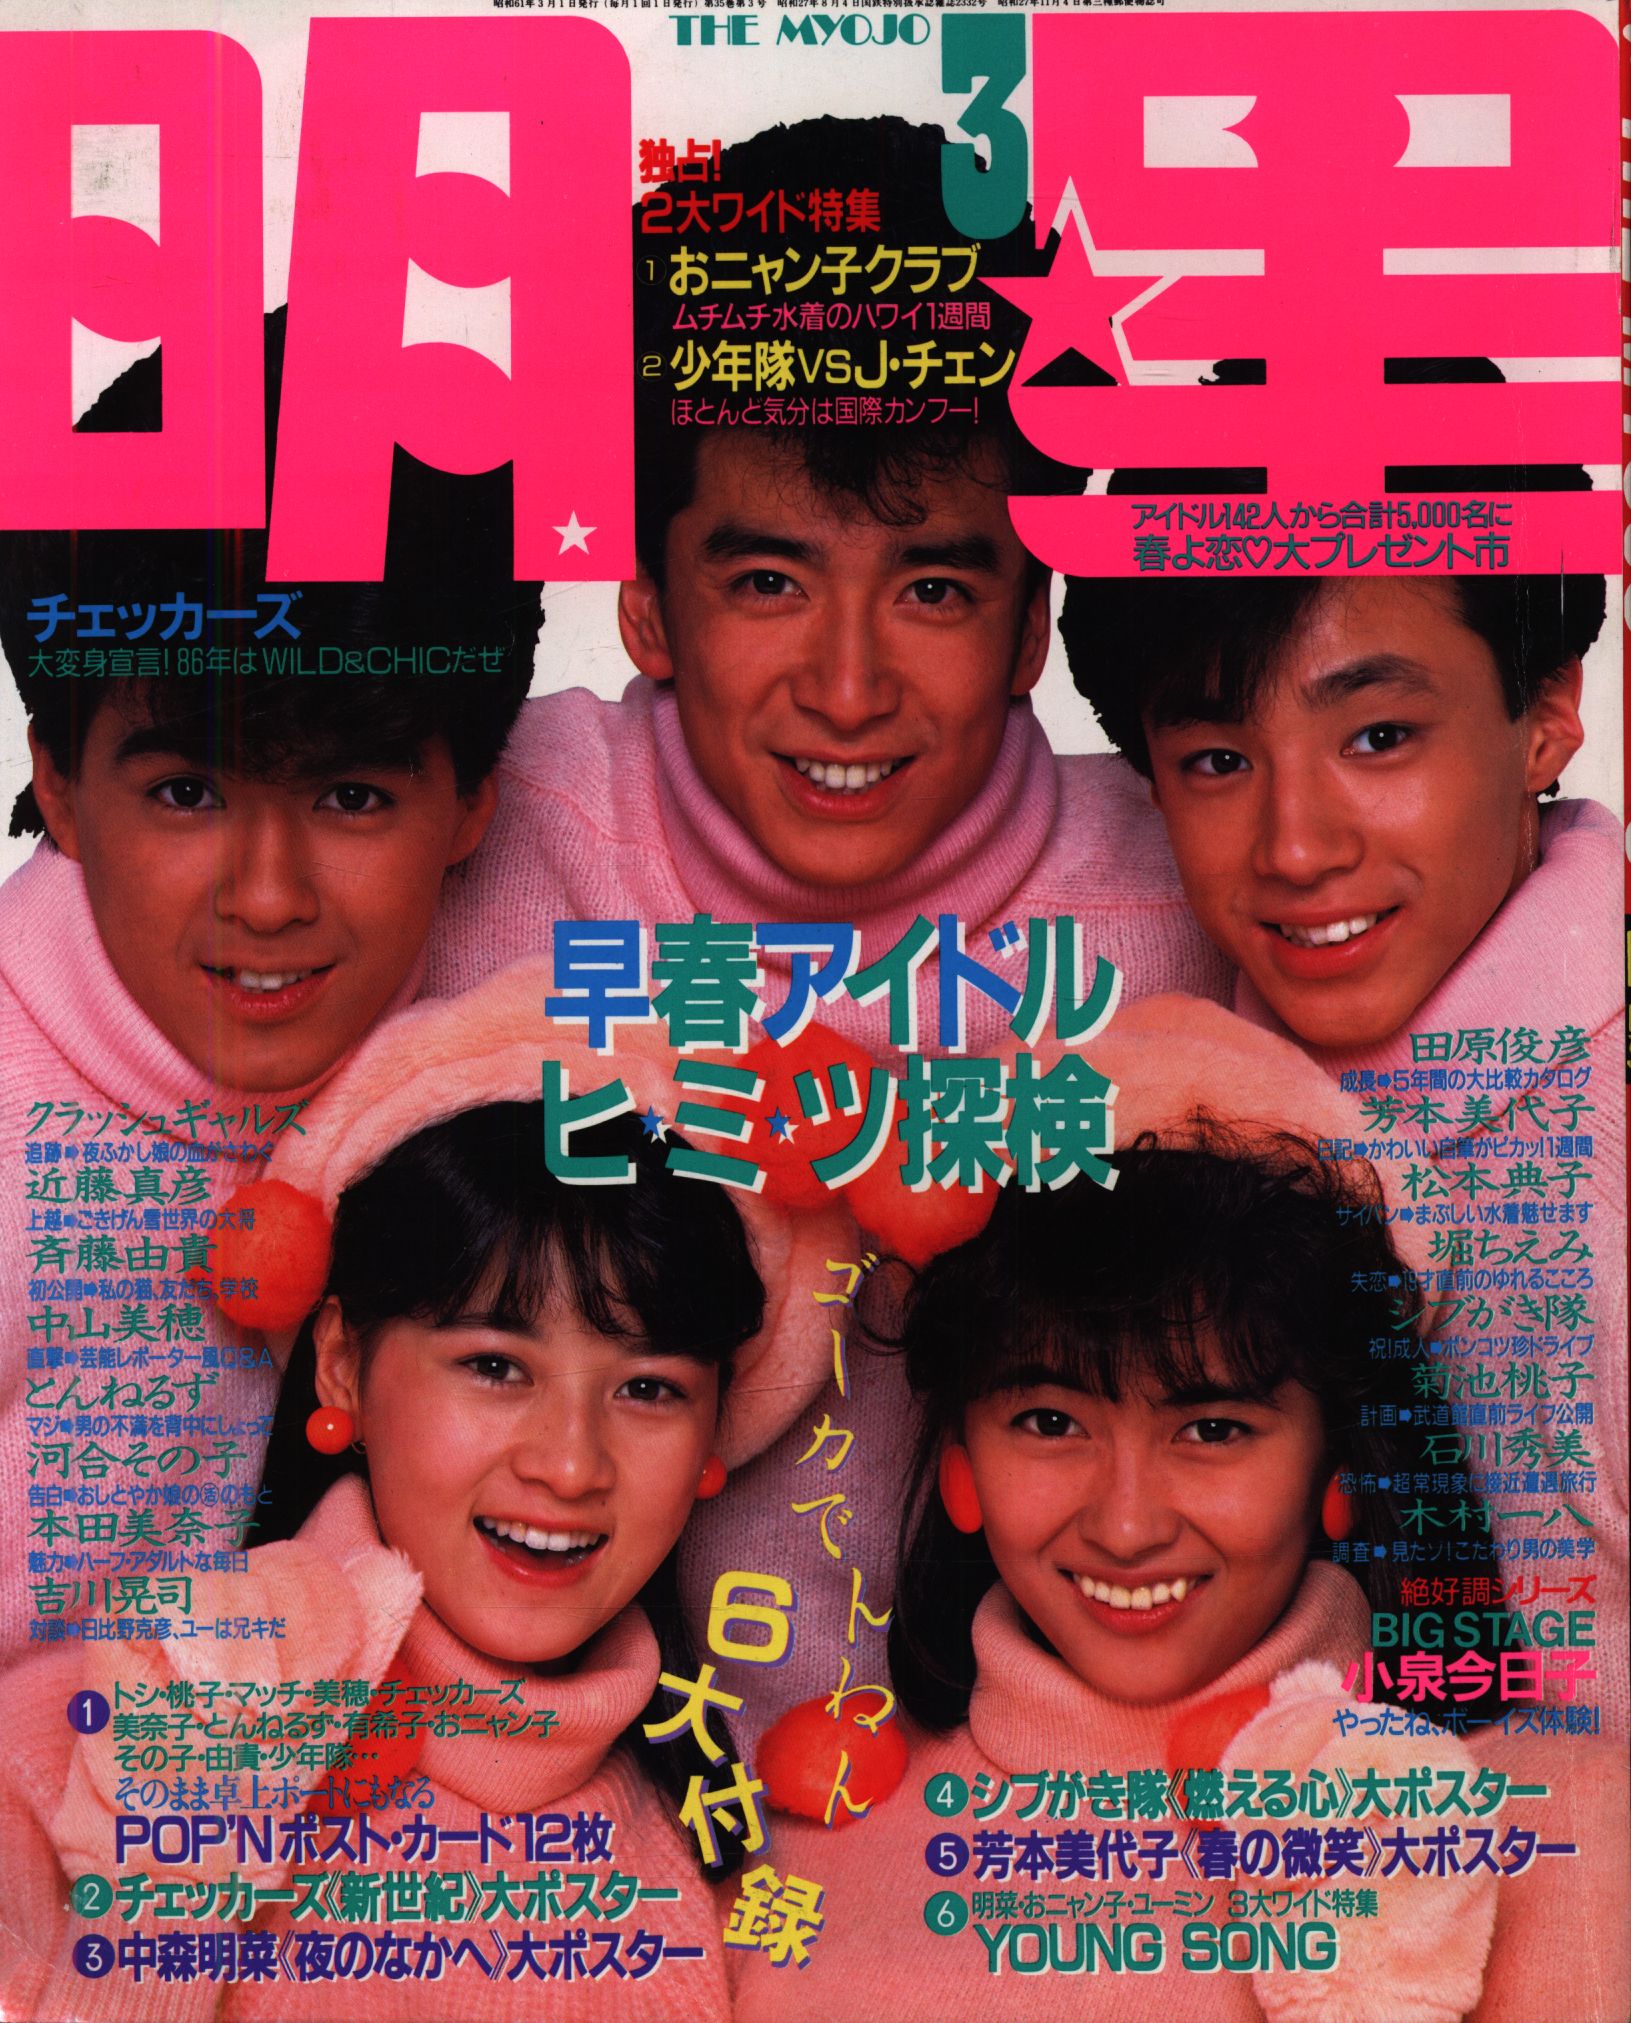 昭和発行アイドル雑誌「明星 」1984年1月〜12月号 - アート/エンタメ 